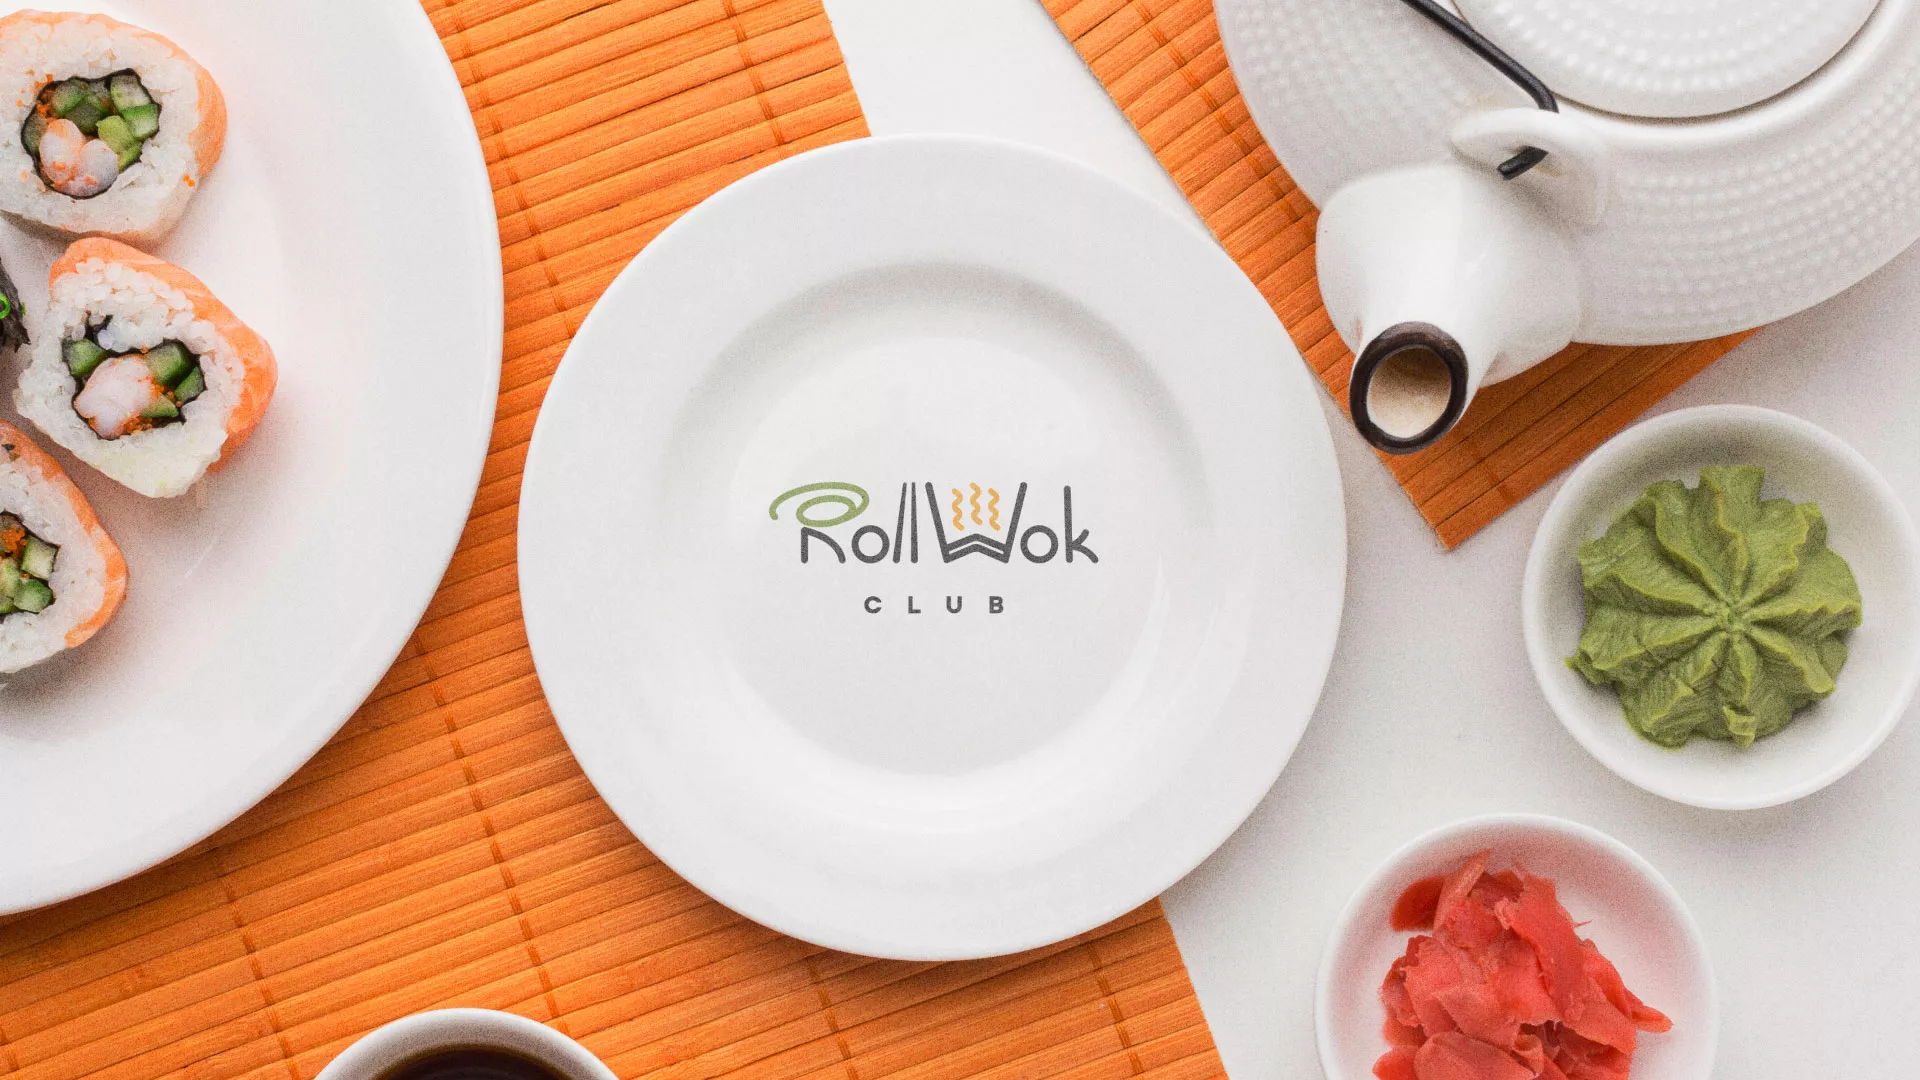 Разработка логотипа и фирменного стиля суши-бара «Roll Wok Club» в Заволжье